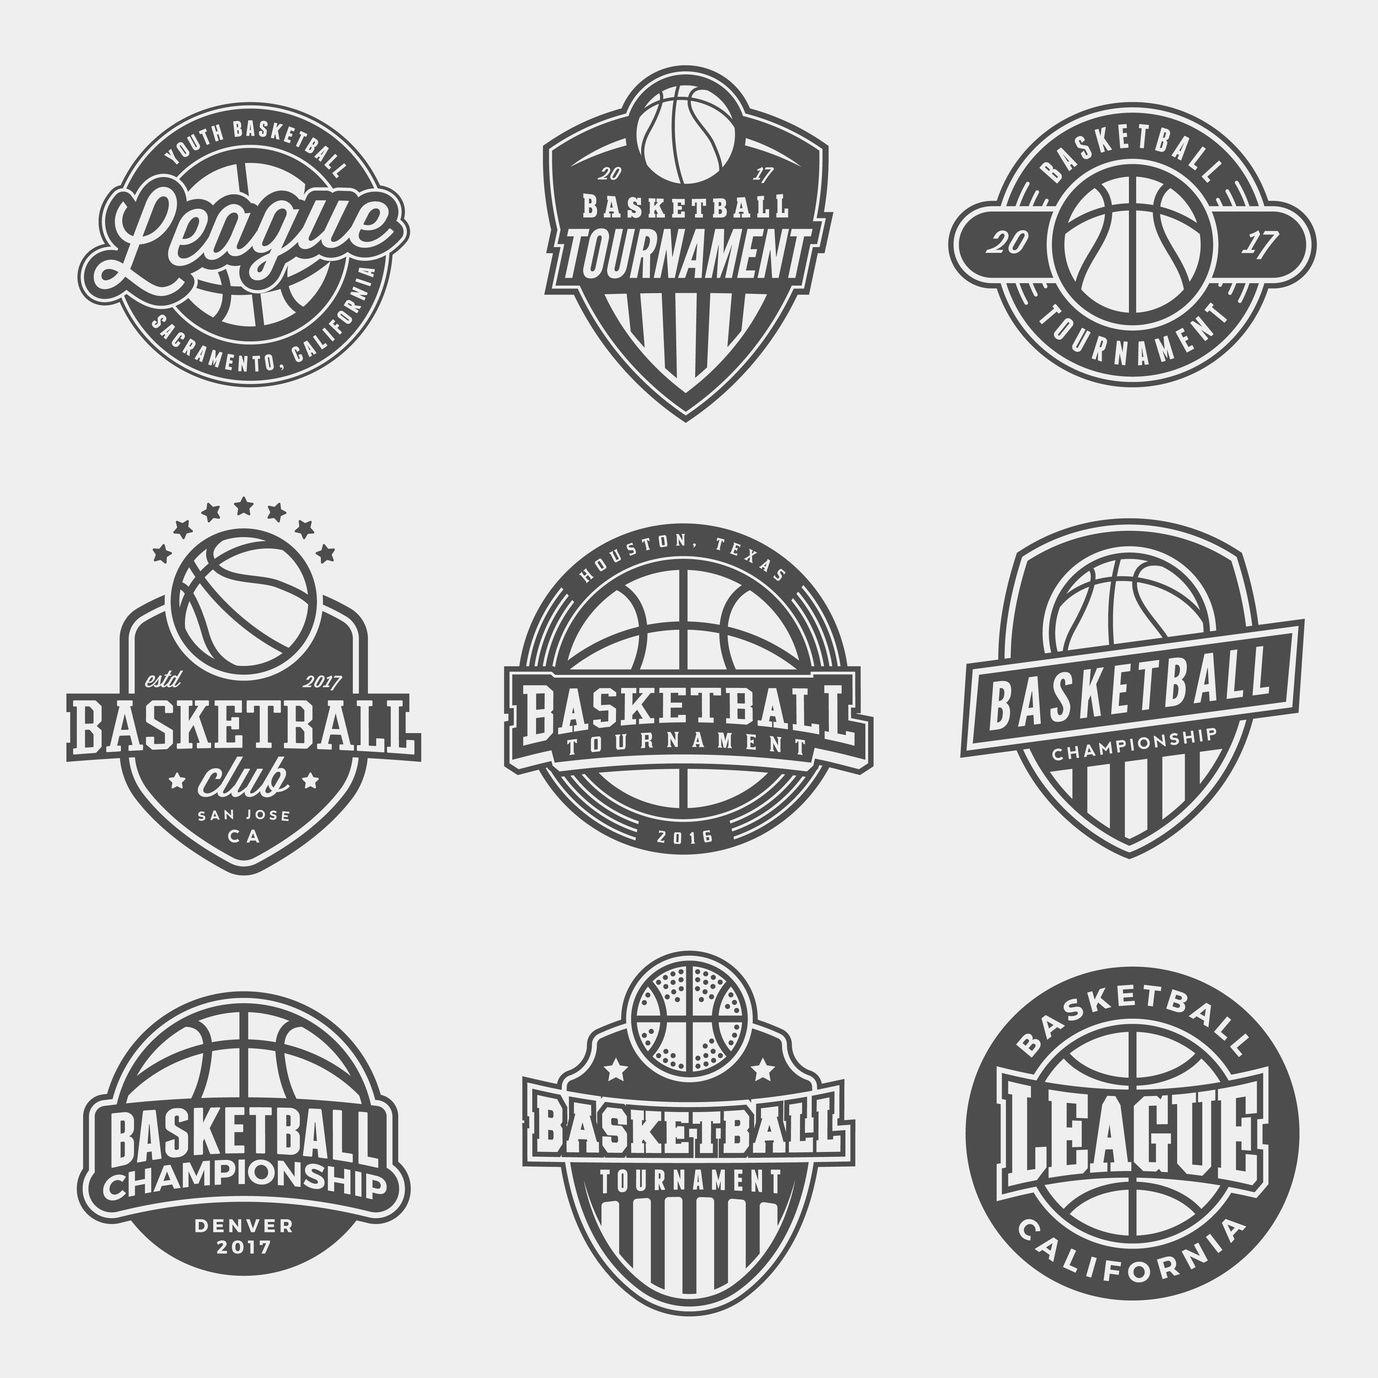 Fun Basketball Logo - How to Create a Fun Basketball Logo • Online Logo Maker's Blog